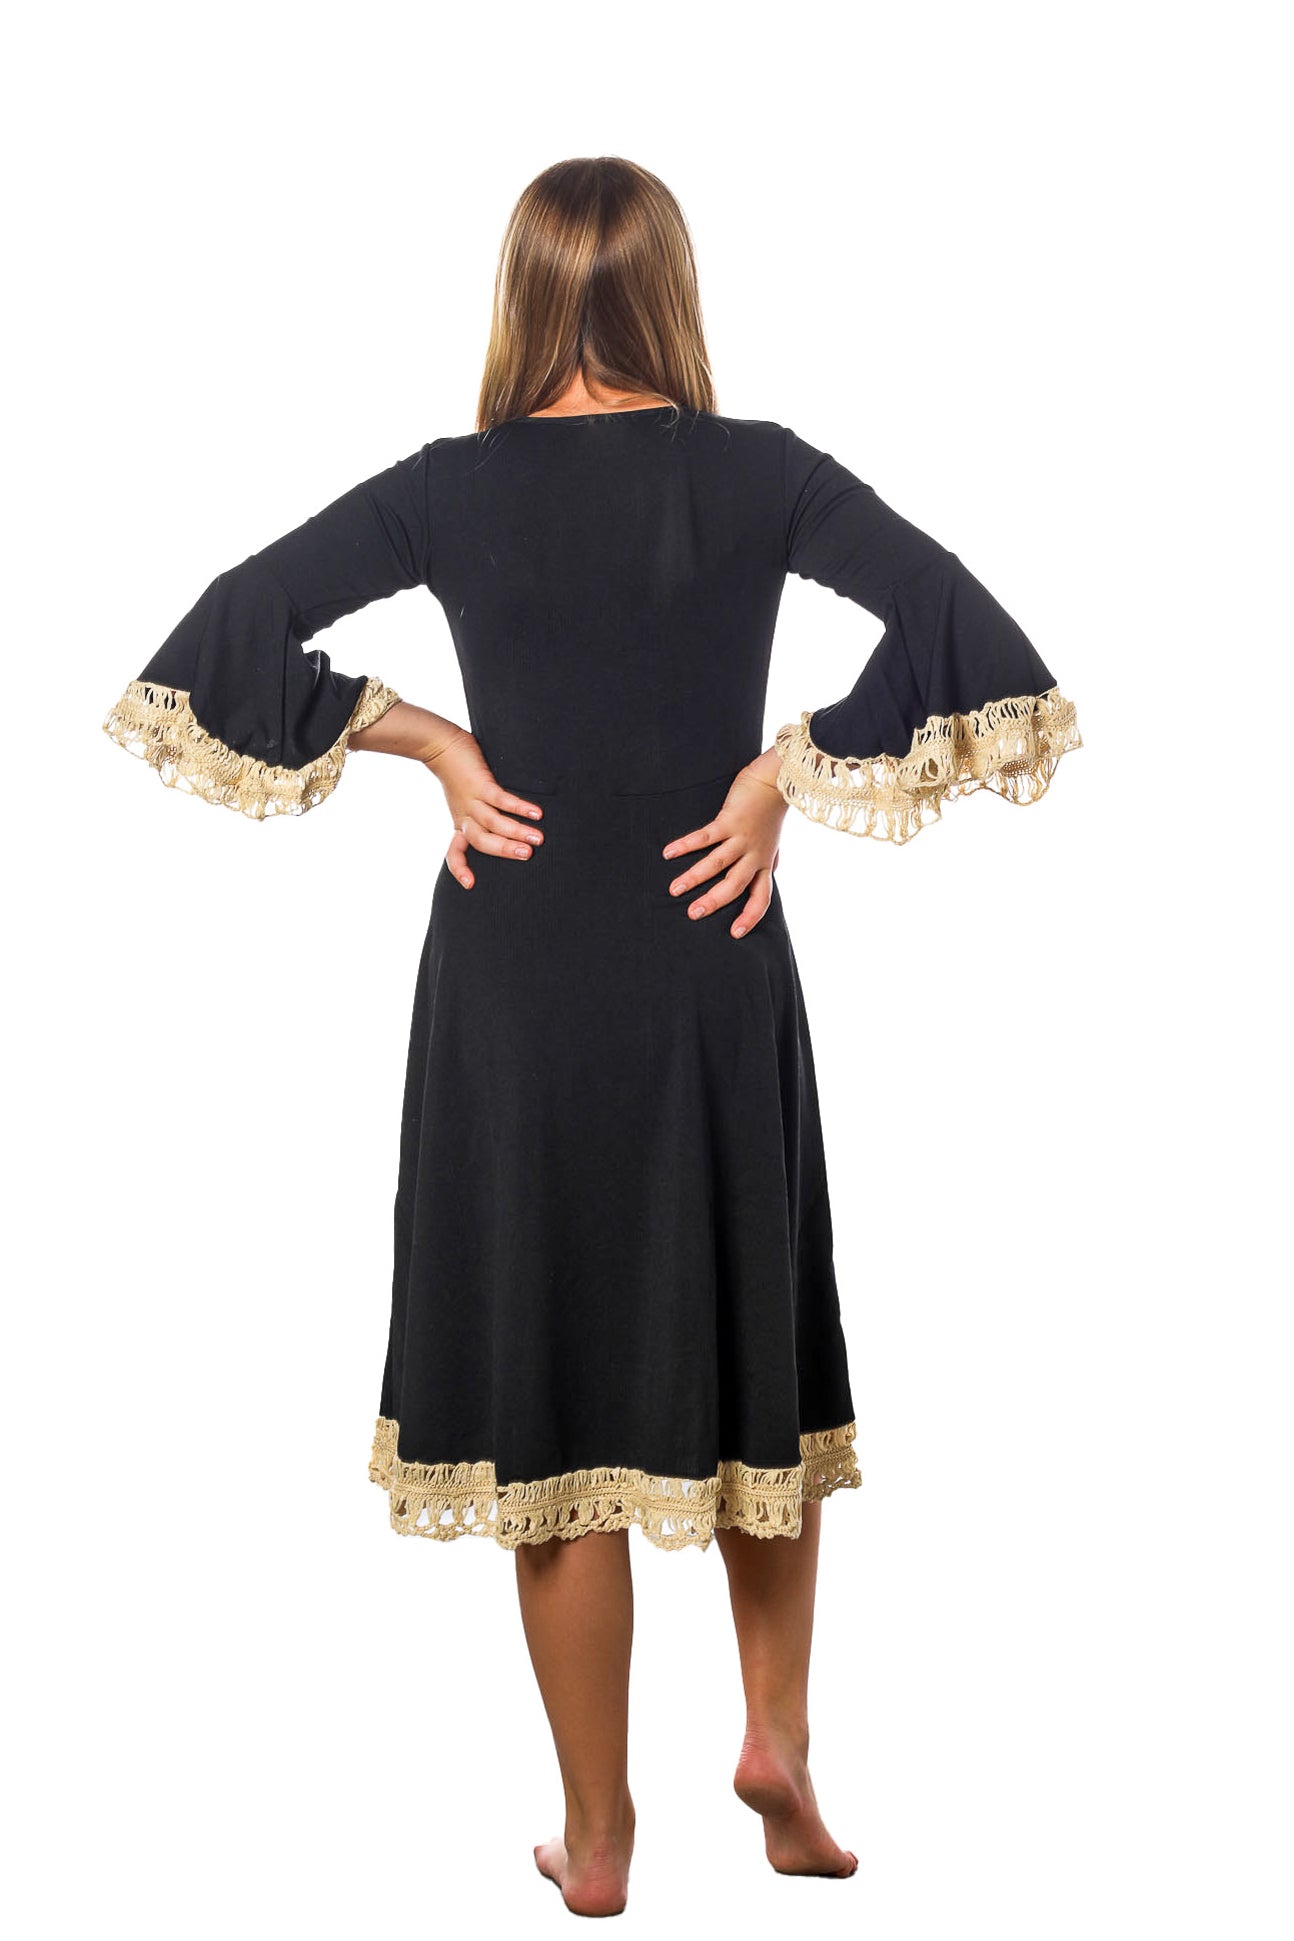 Tween Crochet-Trimmed Dress - Black